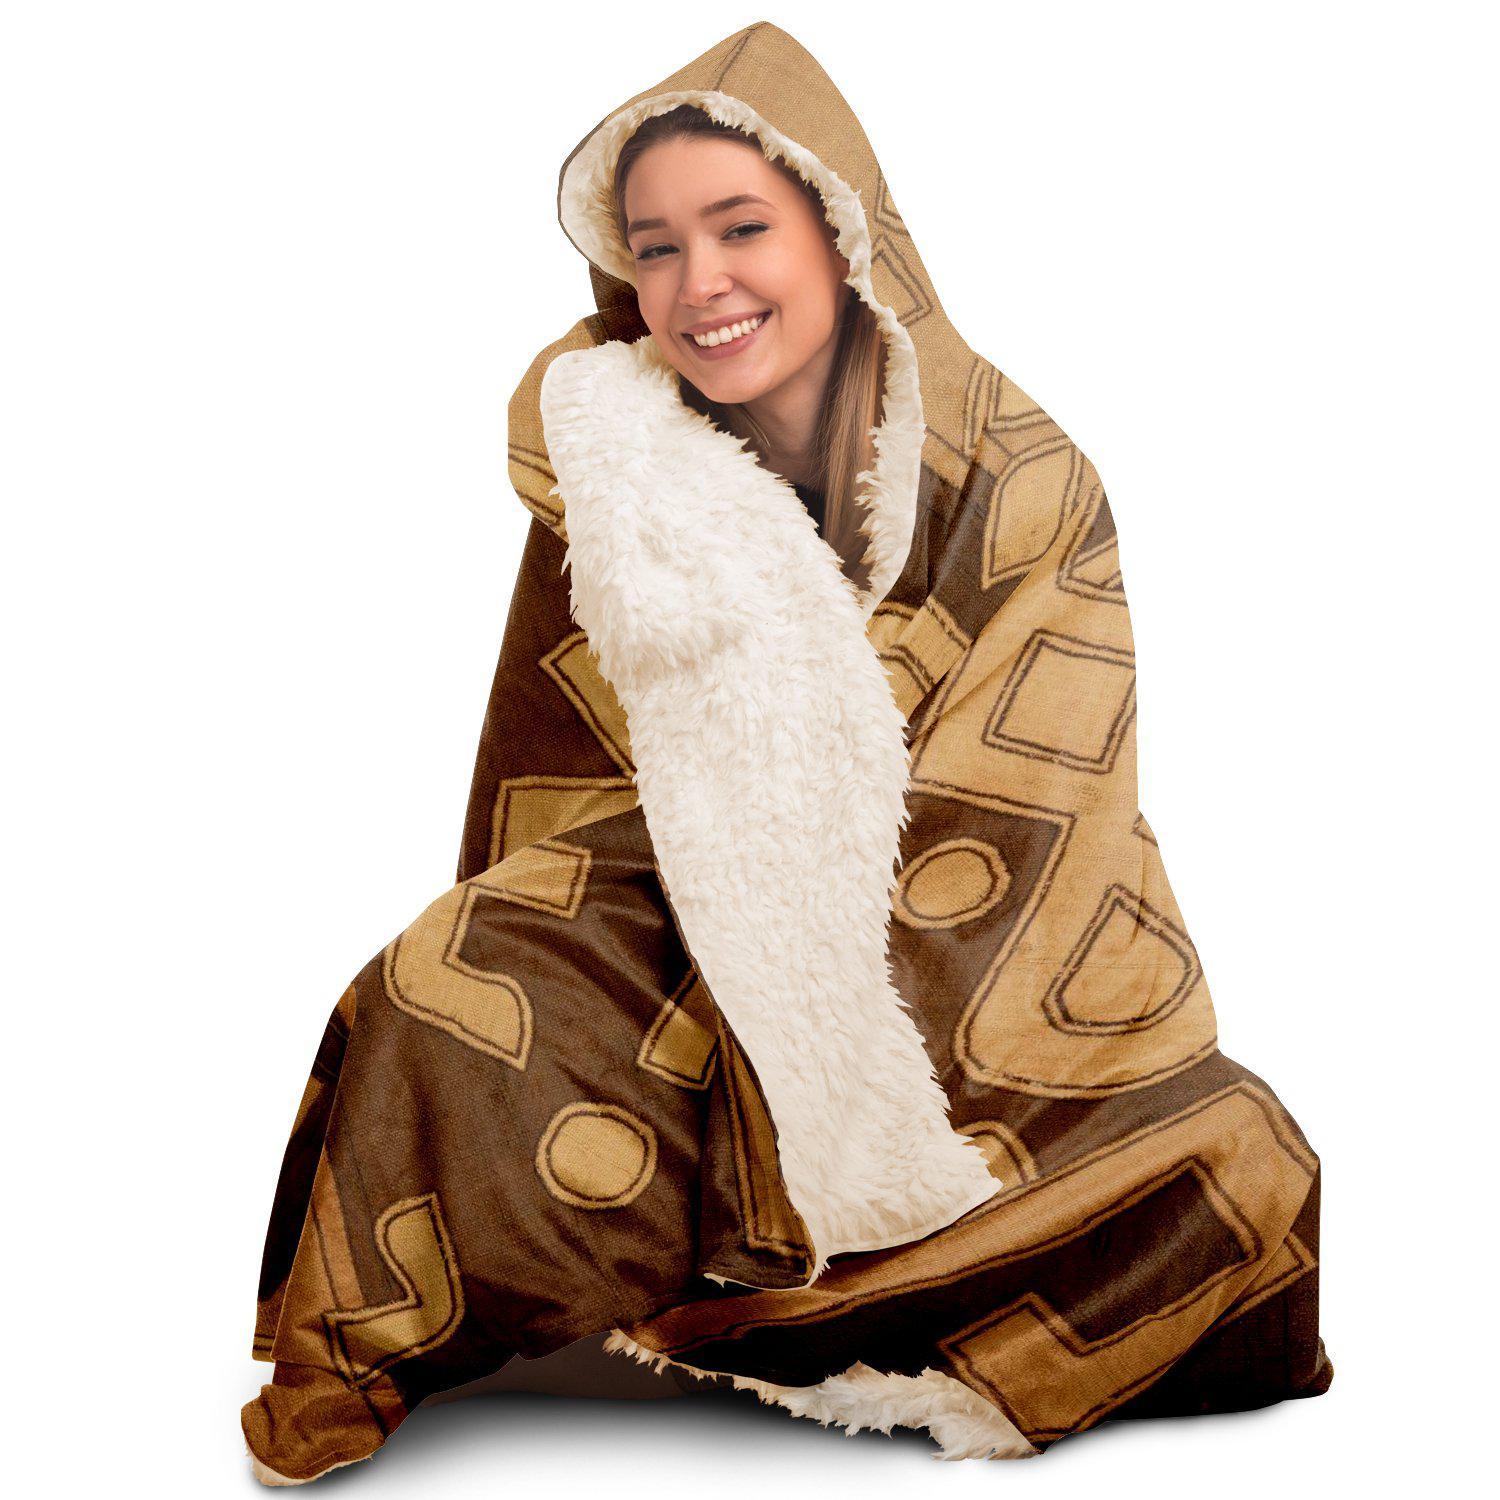 Hooded Blanket - AOP Kuba Cloth Inspired Hooded Blanket (The Congo)